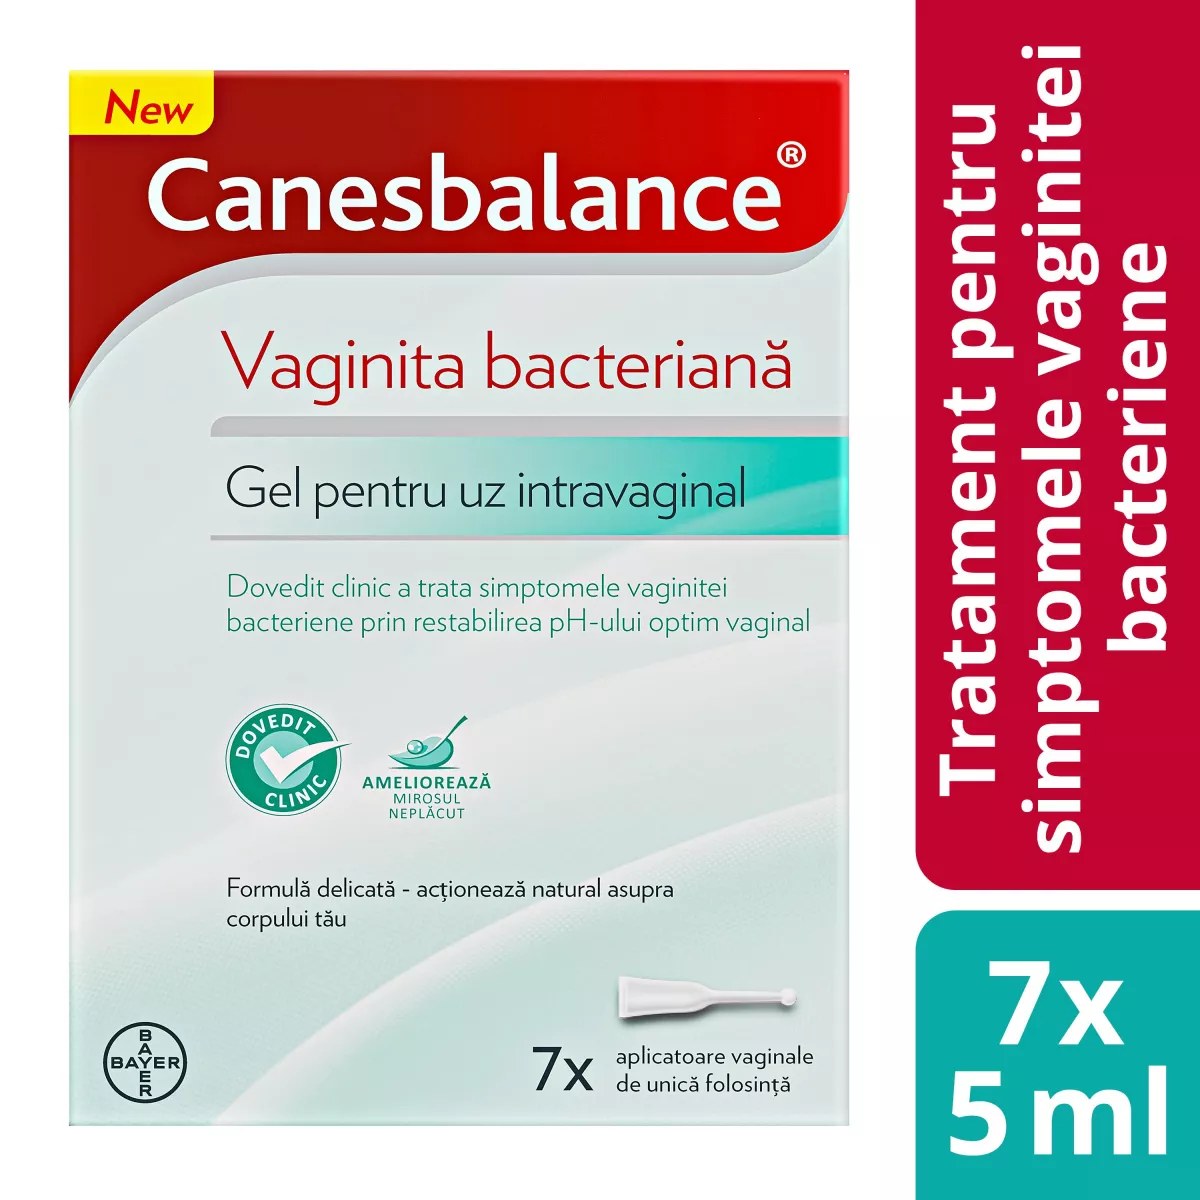 Canesbalance, gel pentru uz intravaginal, 7 aplicatoare preumplute cu gel, Bayer, [],remediumfarm.ro